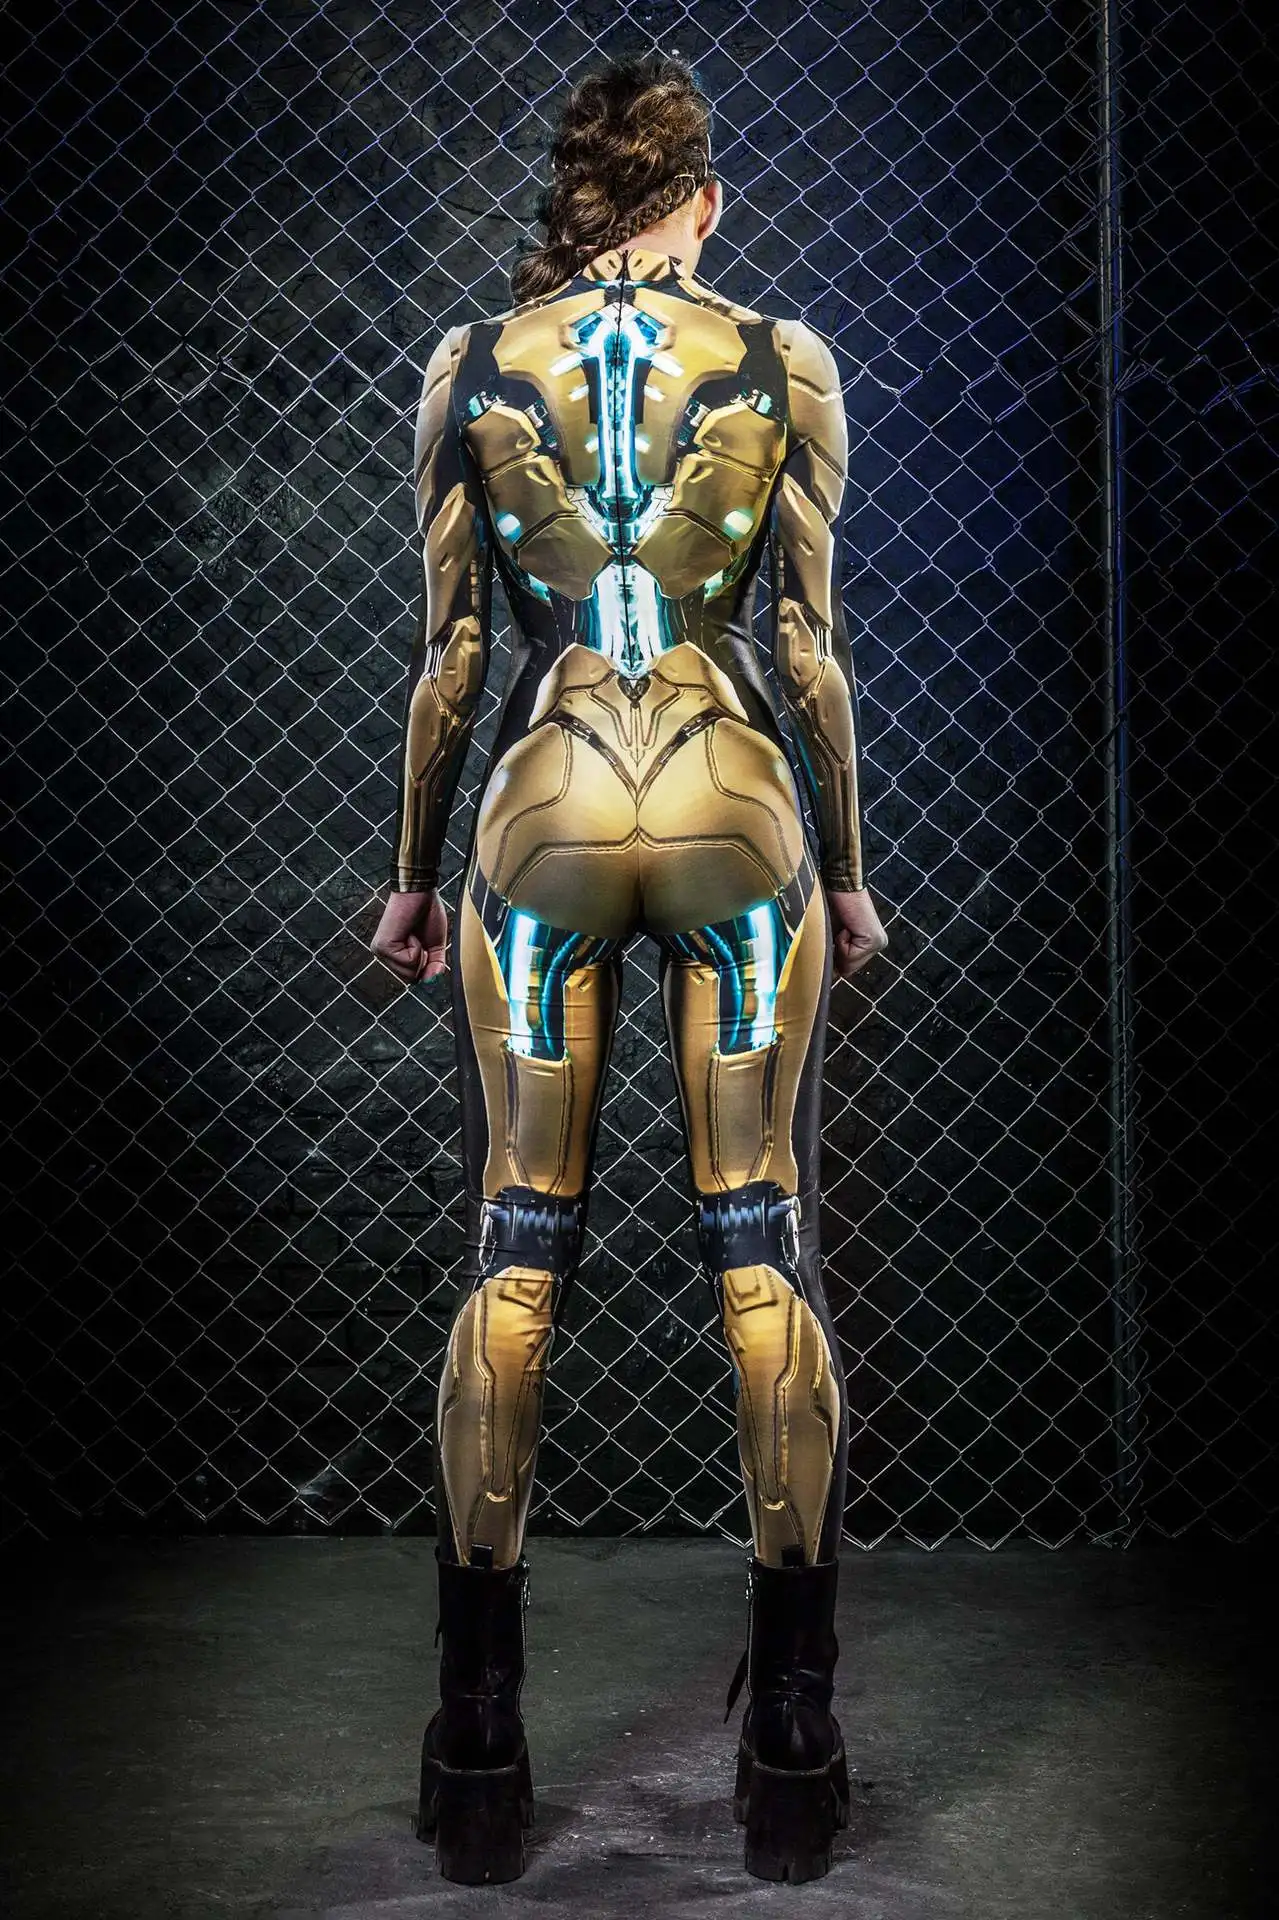 

Futuristic Tech Robot Costume Festival Costume Sexy Tights Sci-fi Show Costume Women